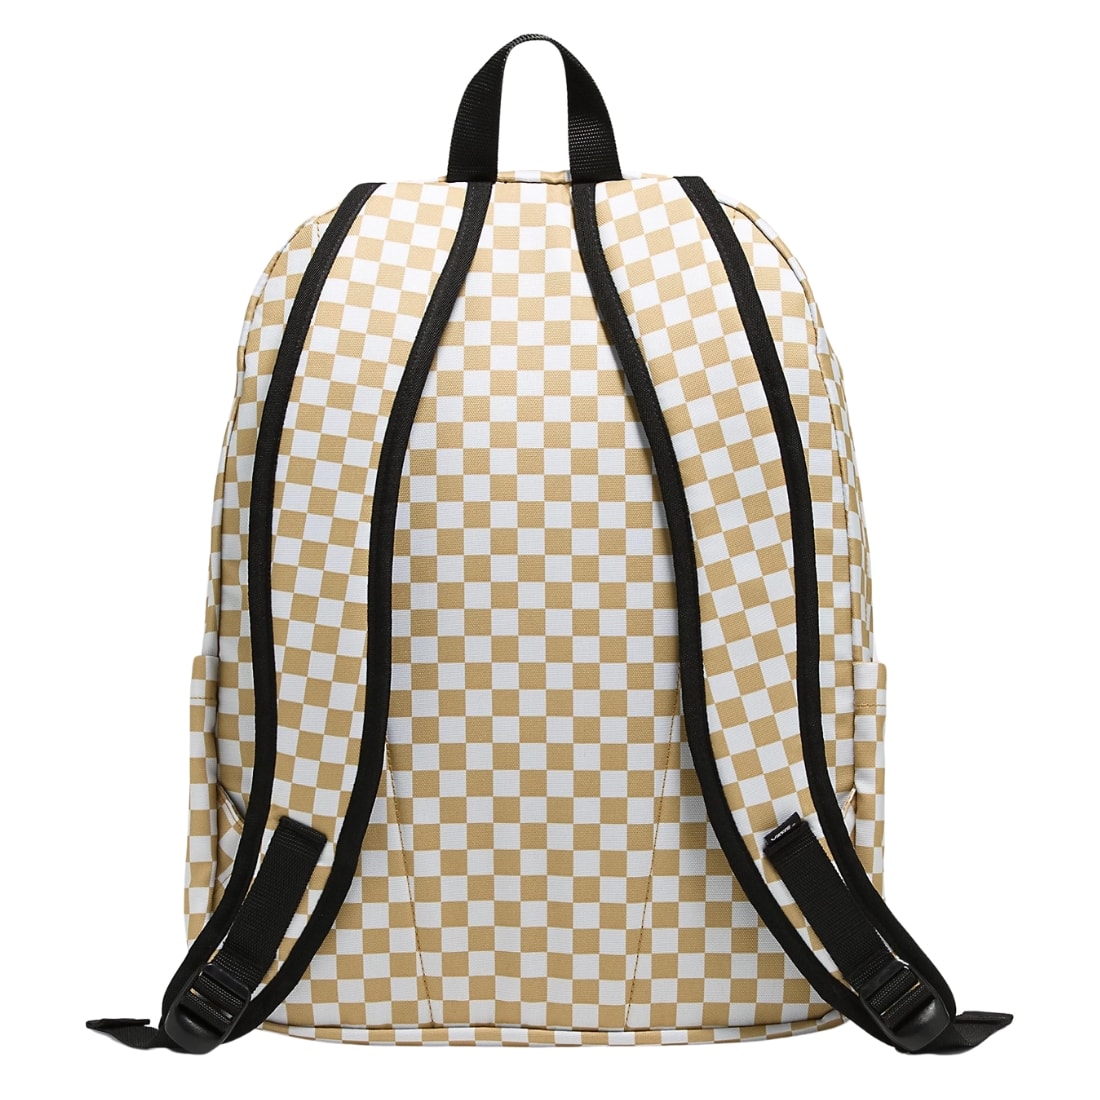 Vans Old Skool Check Backpack - Antelope Brown/White - Backpack by Vans One Size